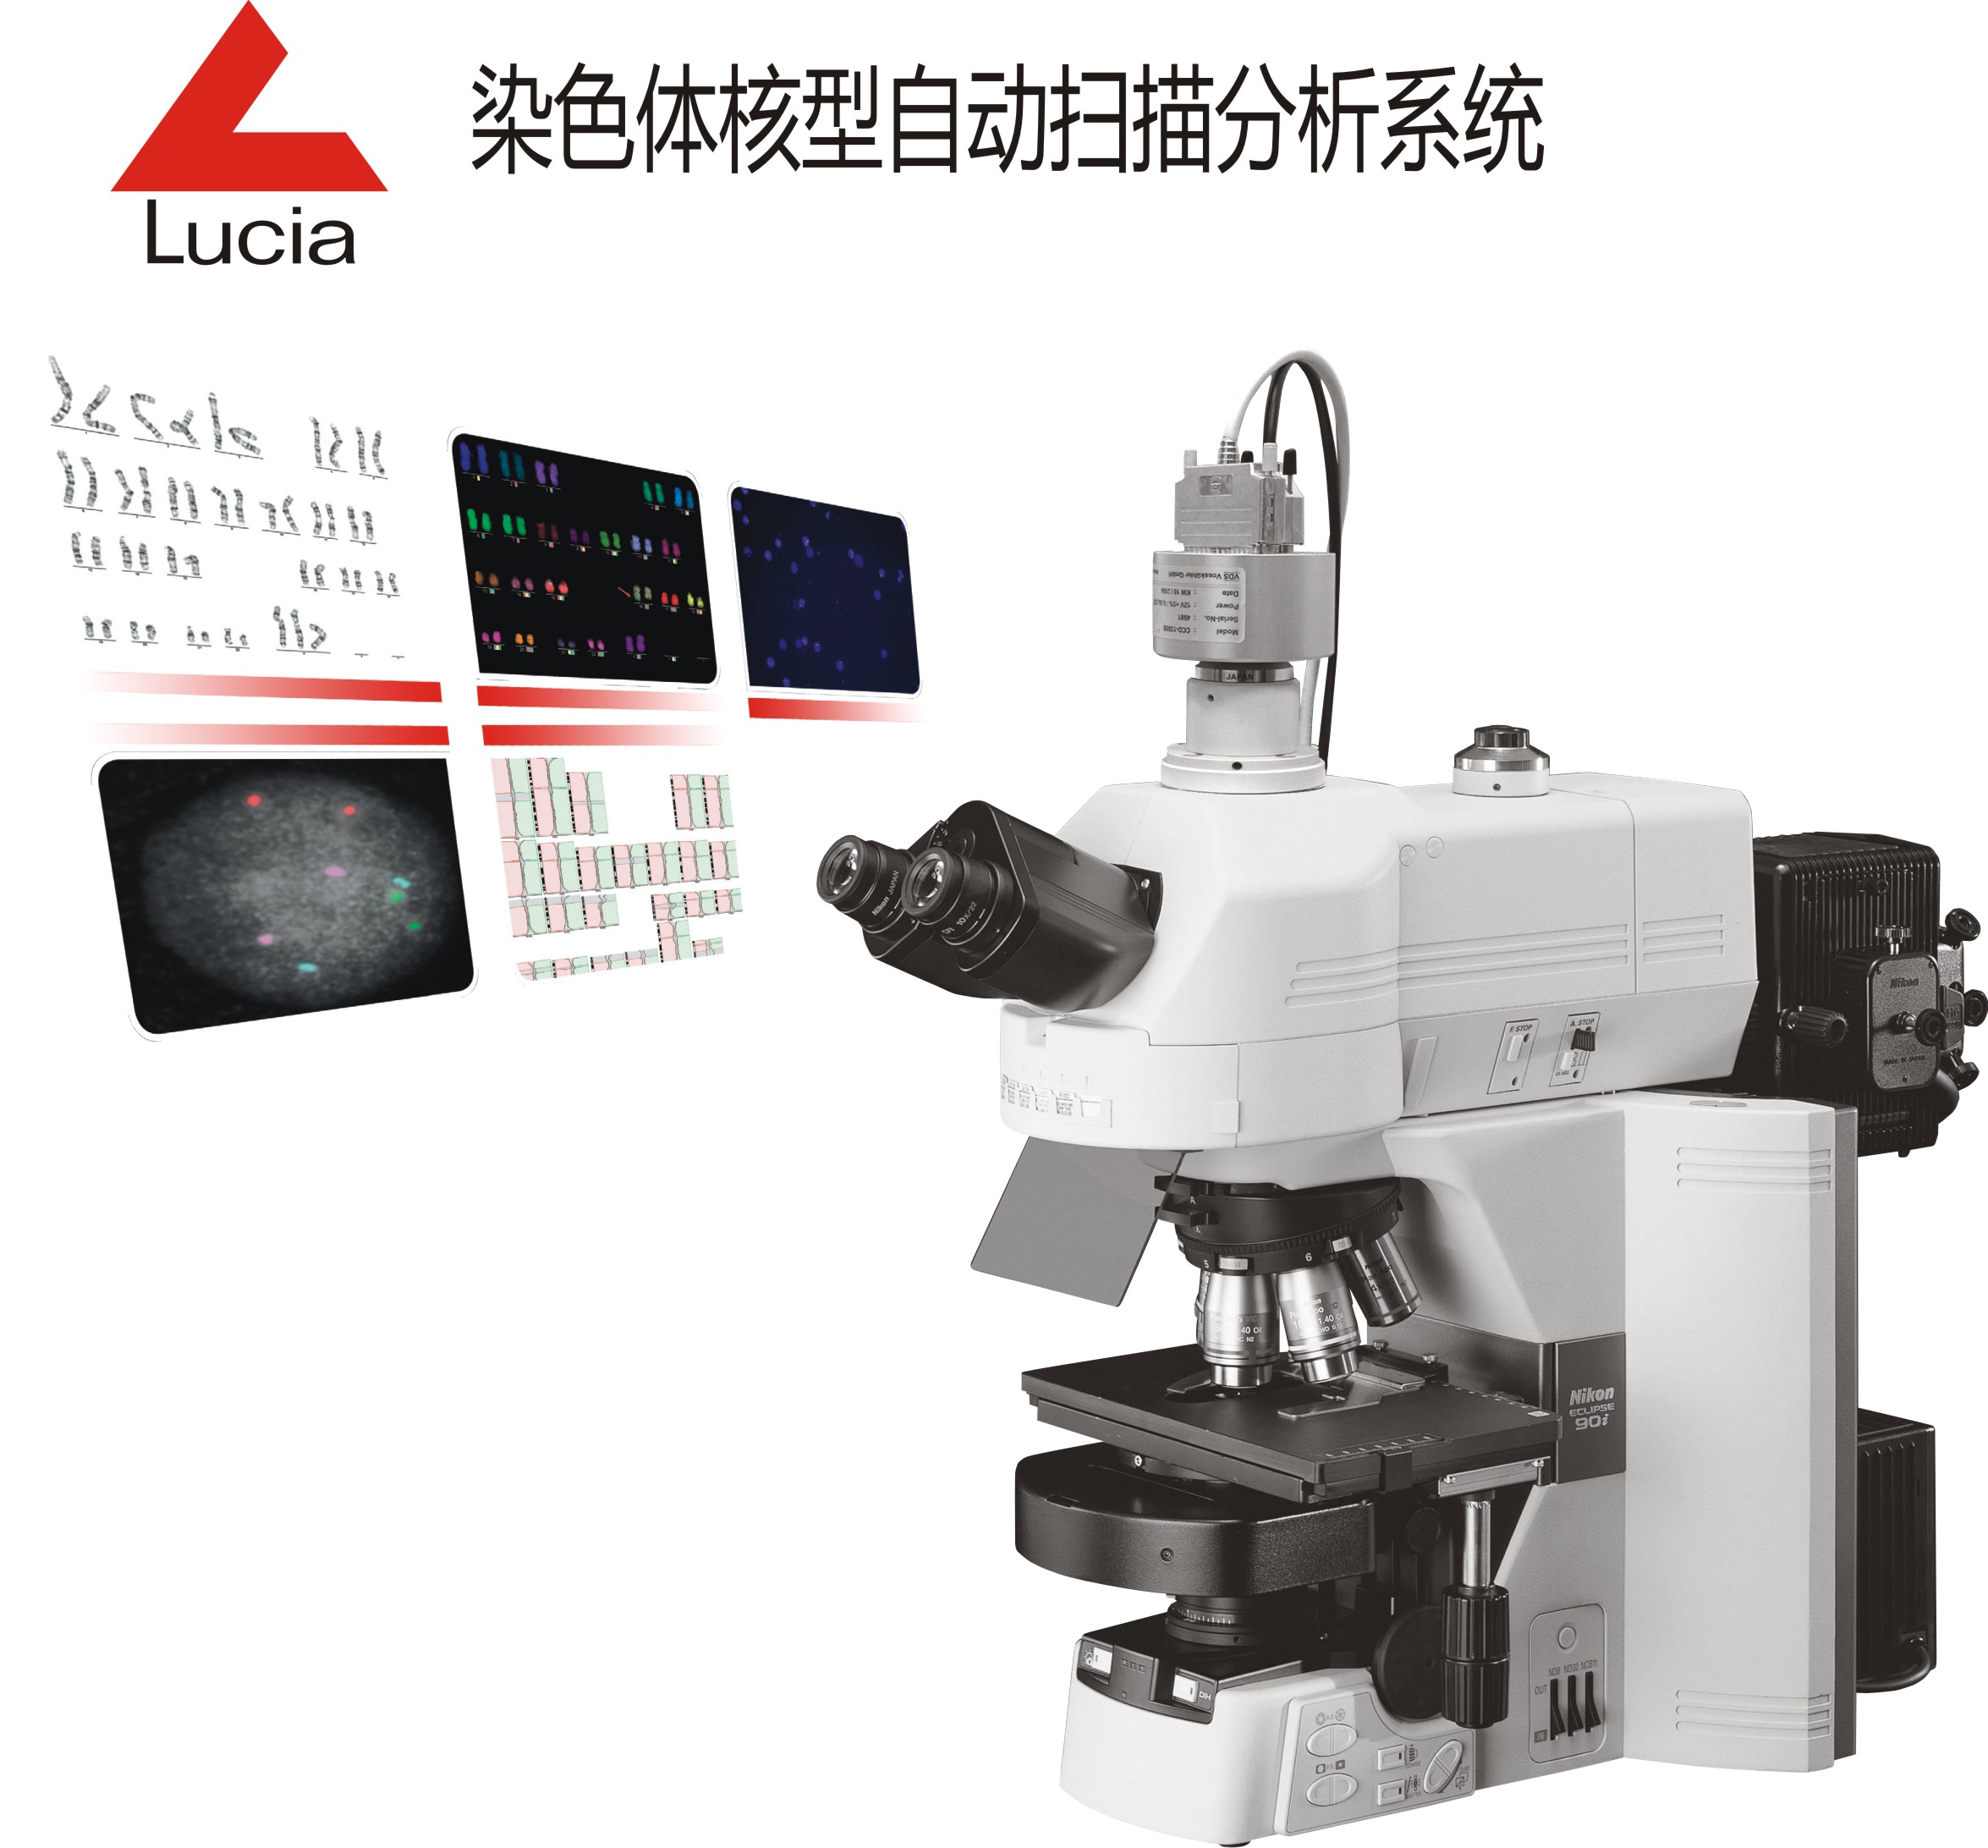 染色体核型自动扫描分析系统